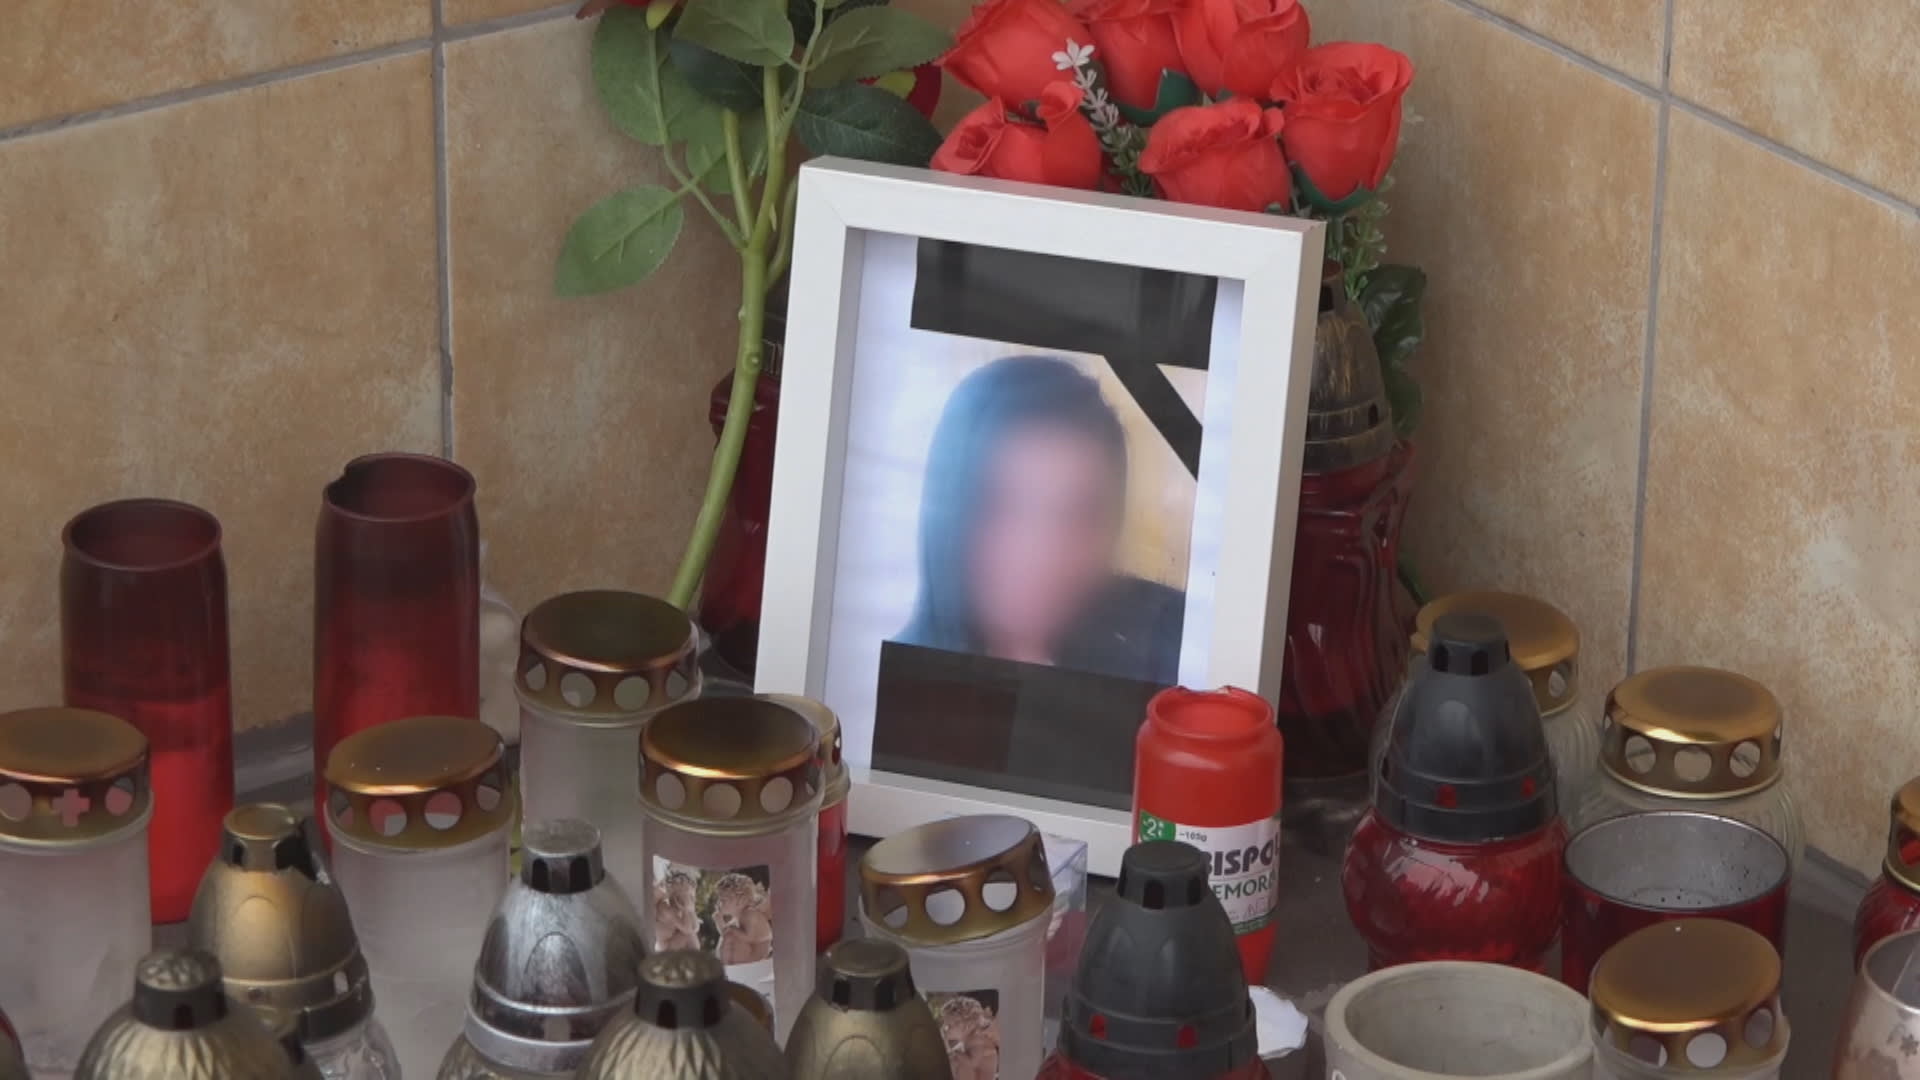 Před domem, kde bydlela zavražděná žena ze Sokolovska, vznikl improvizovaný pomníček.